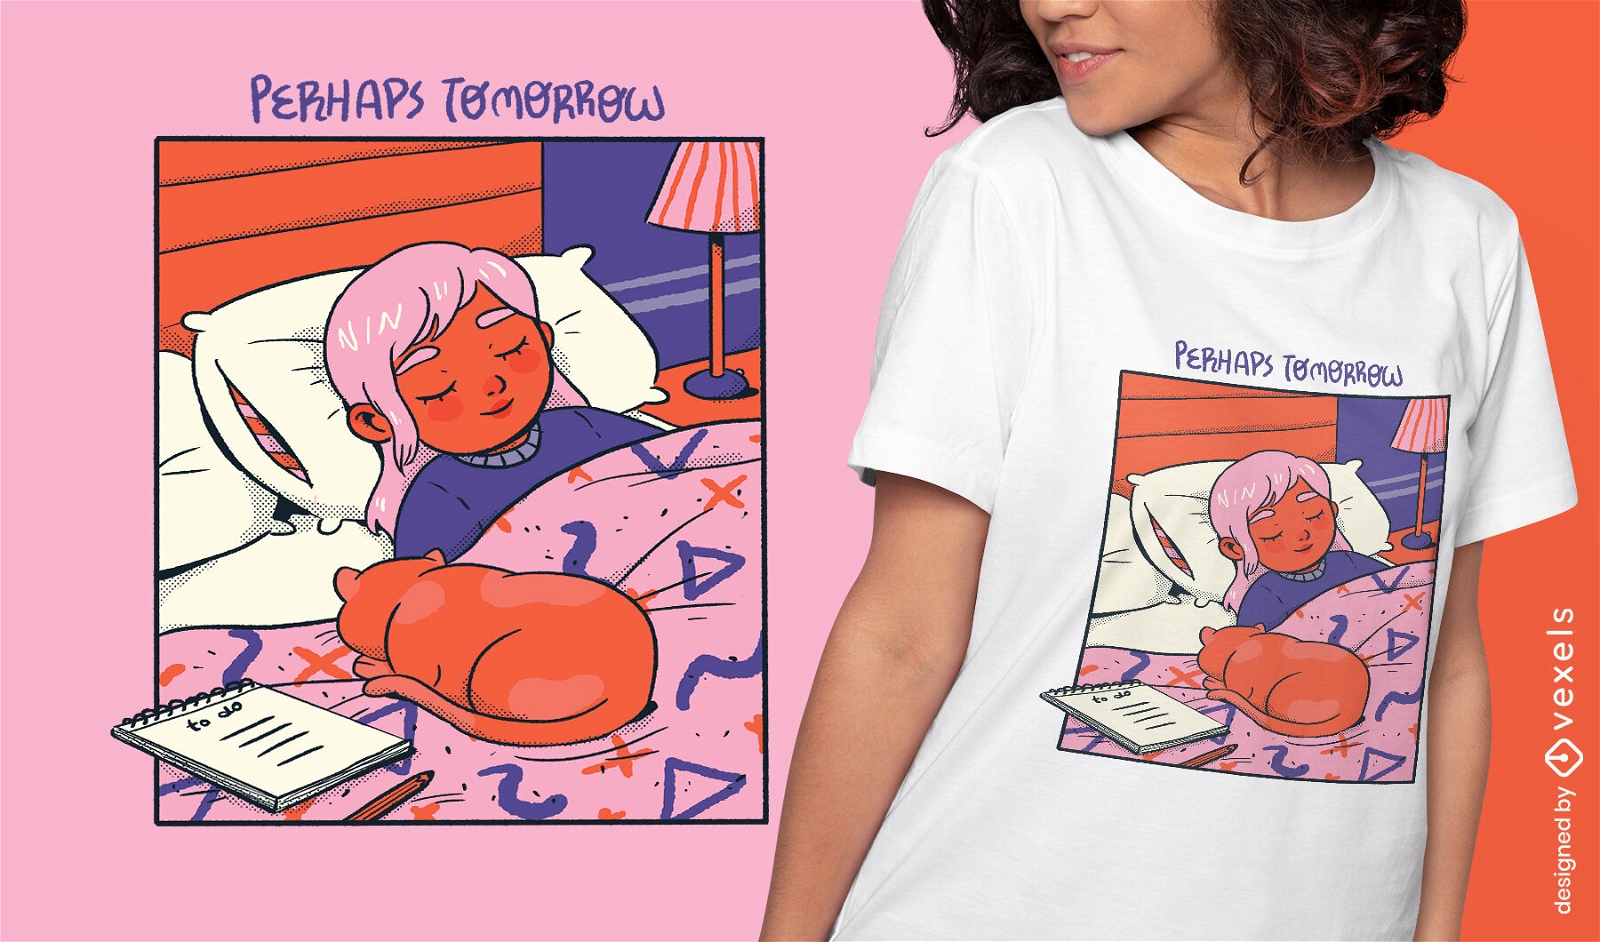 M?dchen und Katze schlafen gem?tliches Comic-T-Shirt-Design